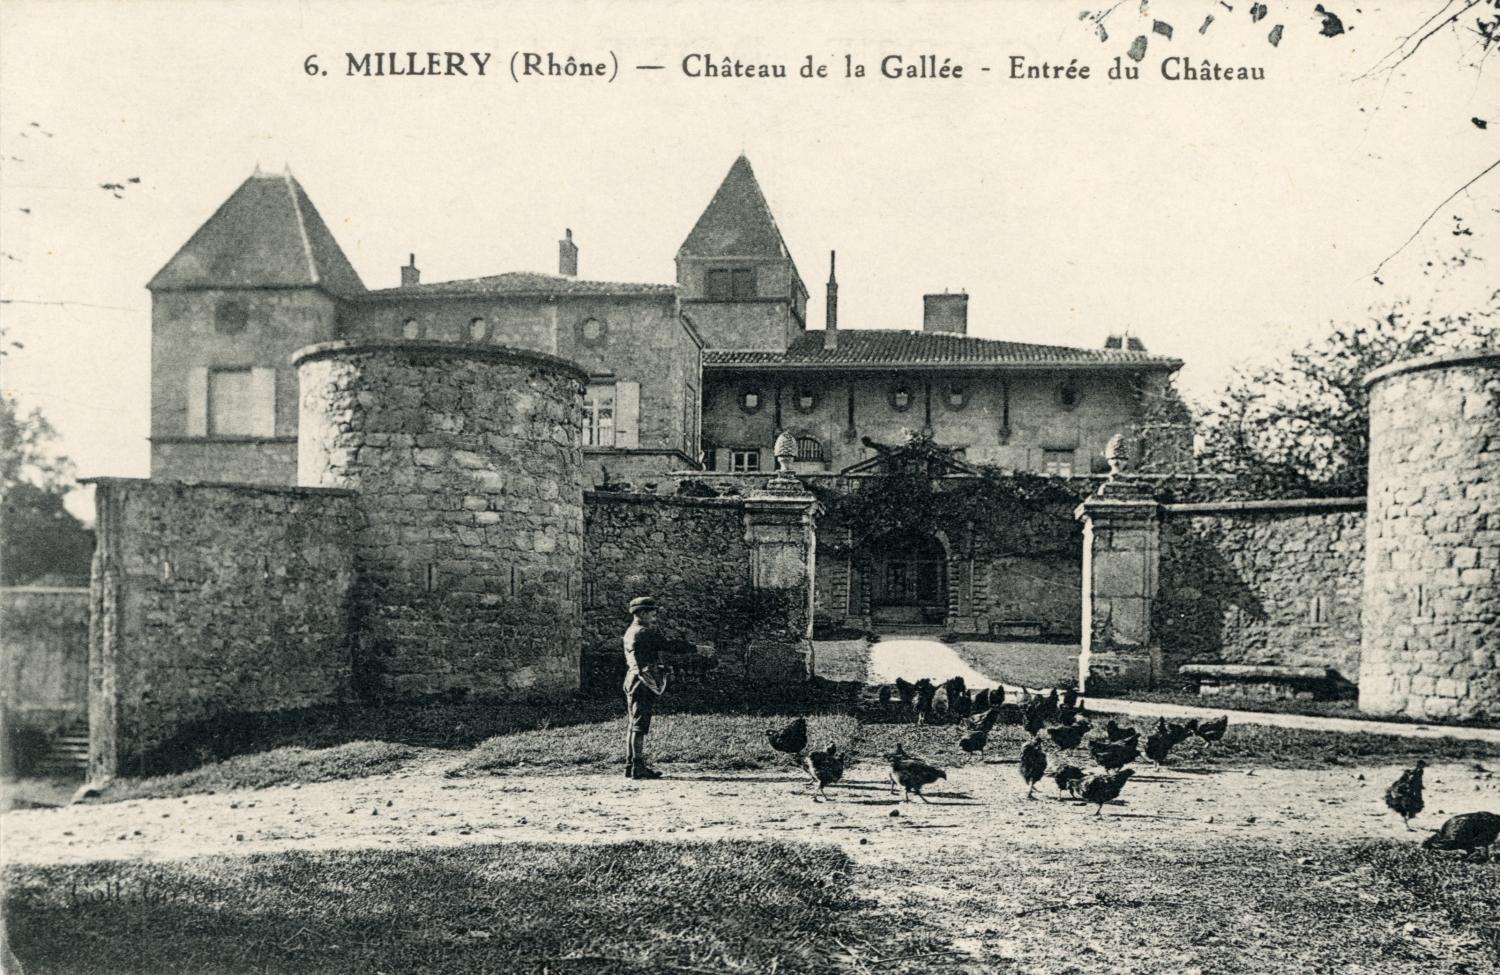 Millery (Rhône). - Château de la Gallée. - Entrée du château